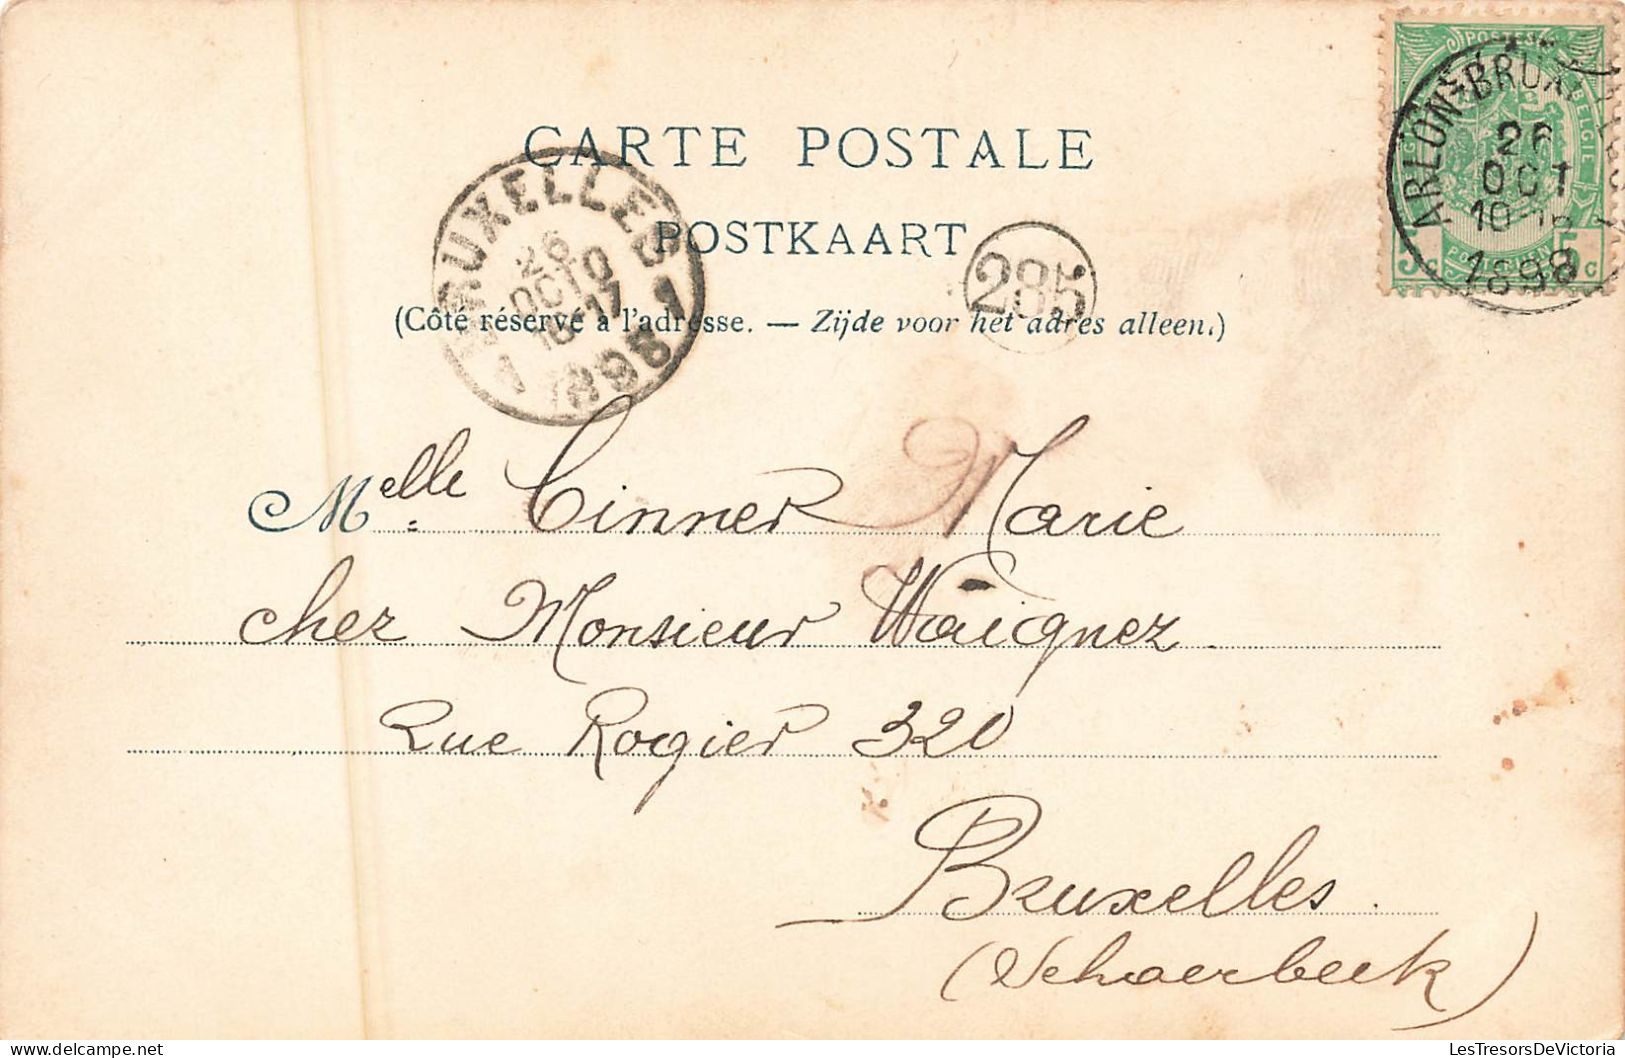 Belgique - Bruxelles - Exposition Universelle De 1897 - Quartier Du Vieux Bruxelles - Carte Postale Ancienne - Wereldtentoonstellingen